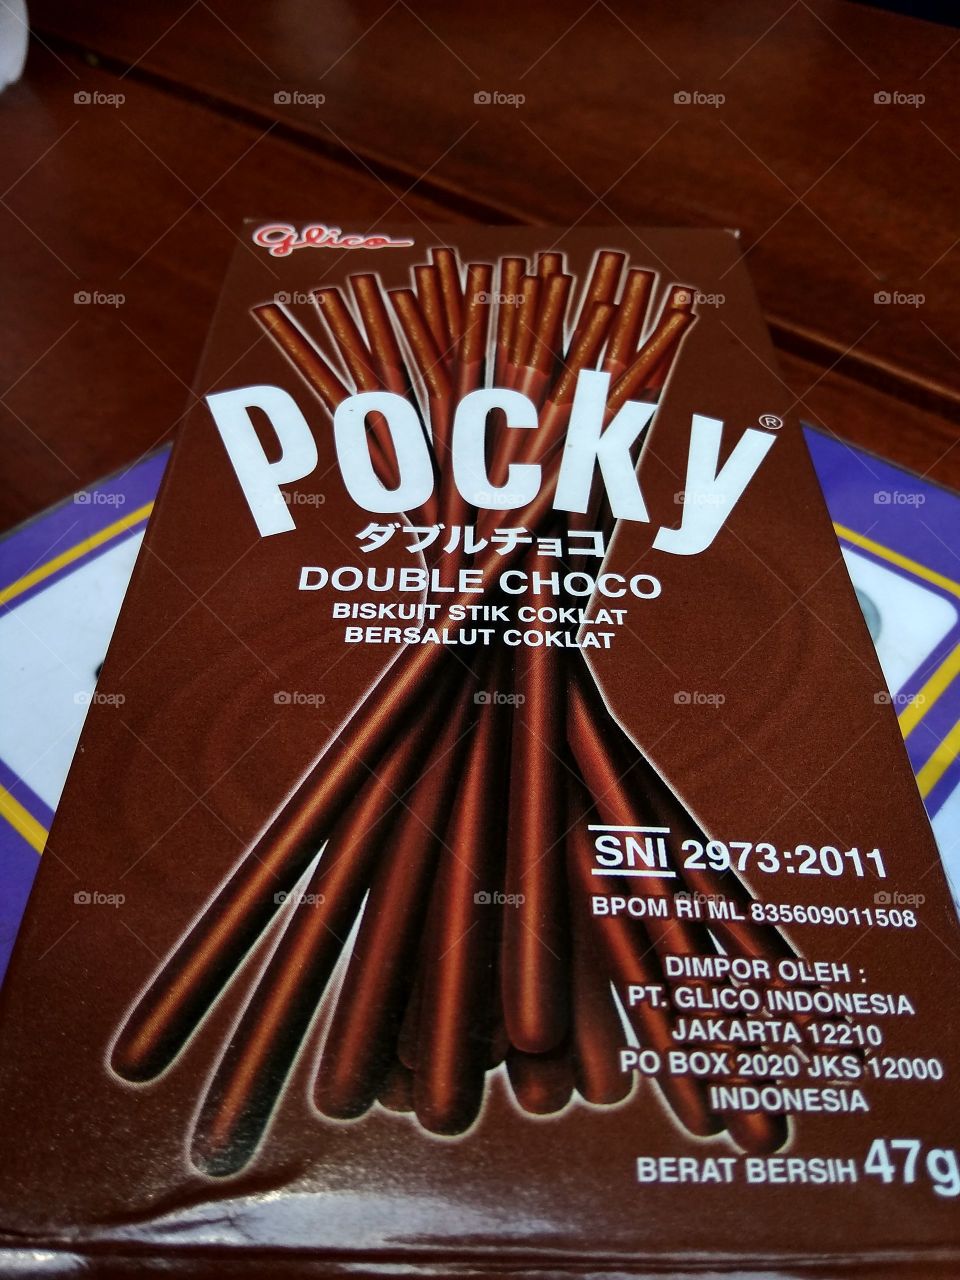 Snack Pocky